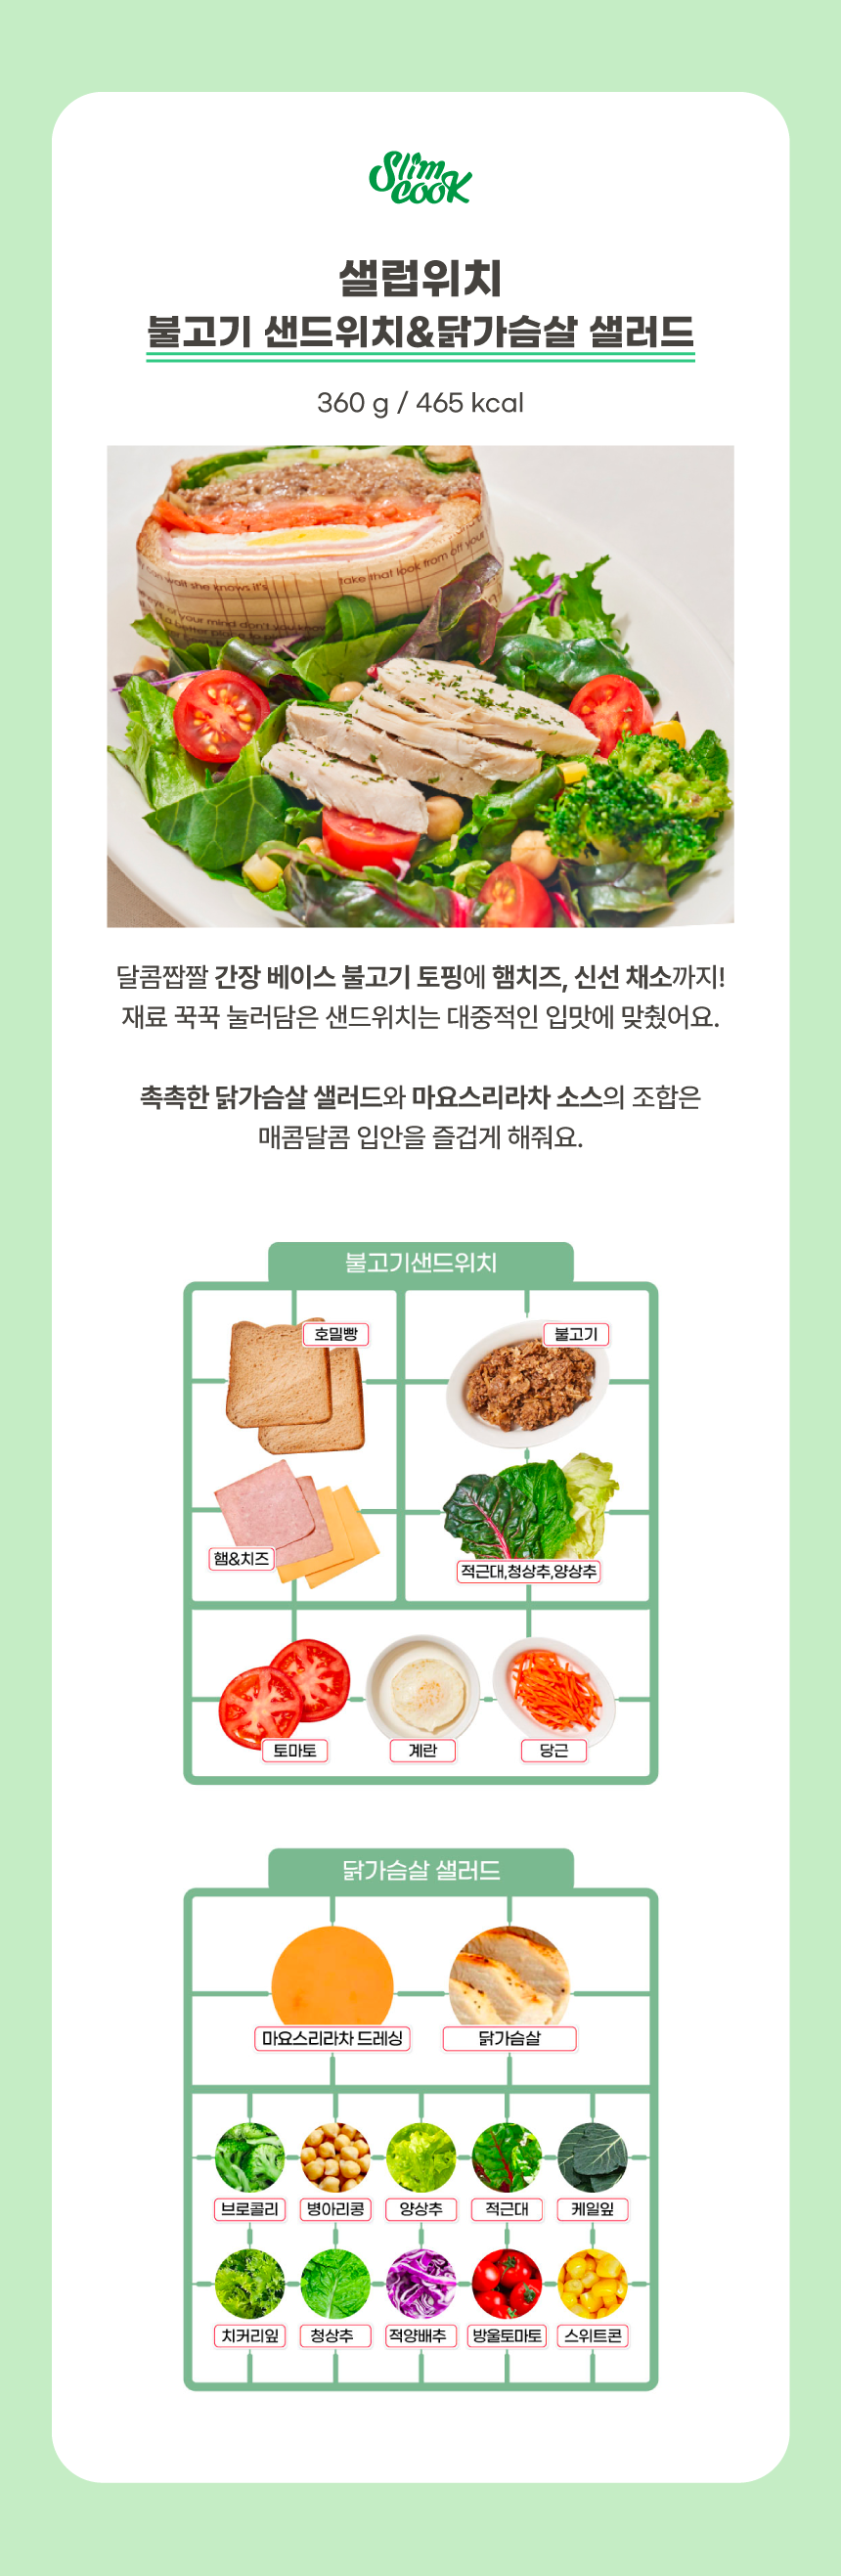 불고기샌드위치&닭가슴살샐러드 상세정보